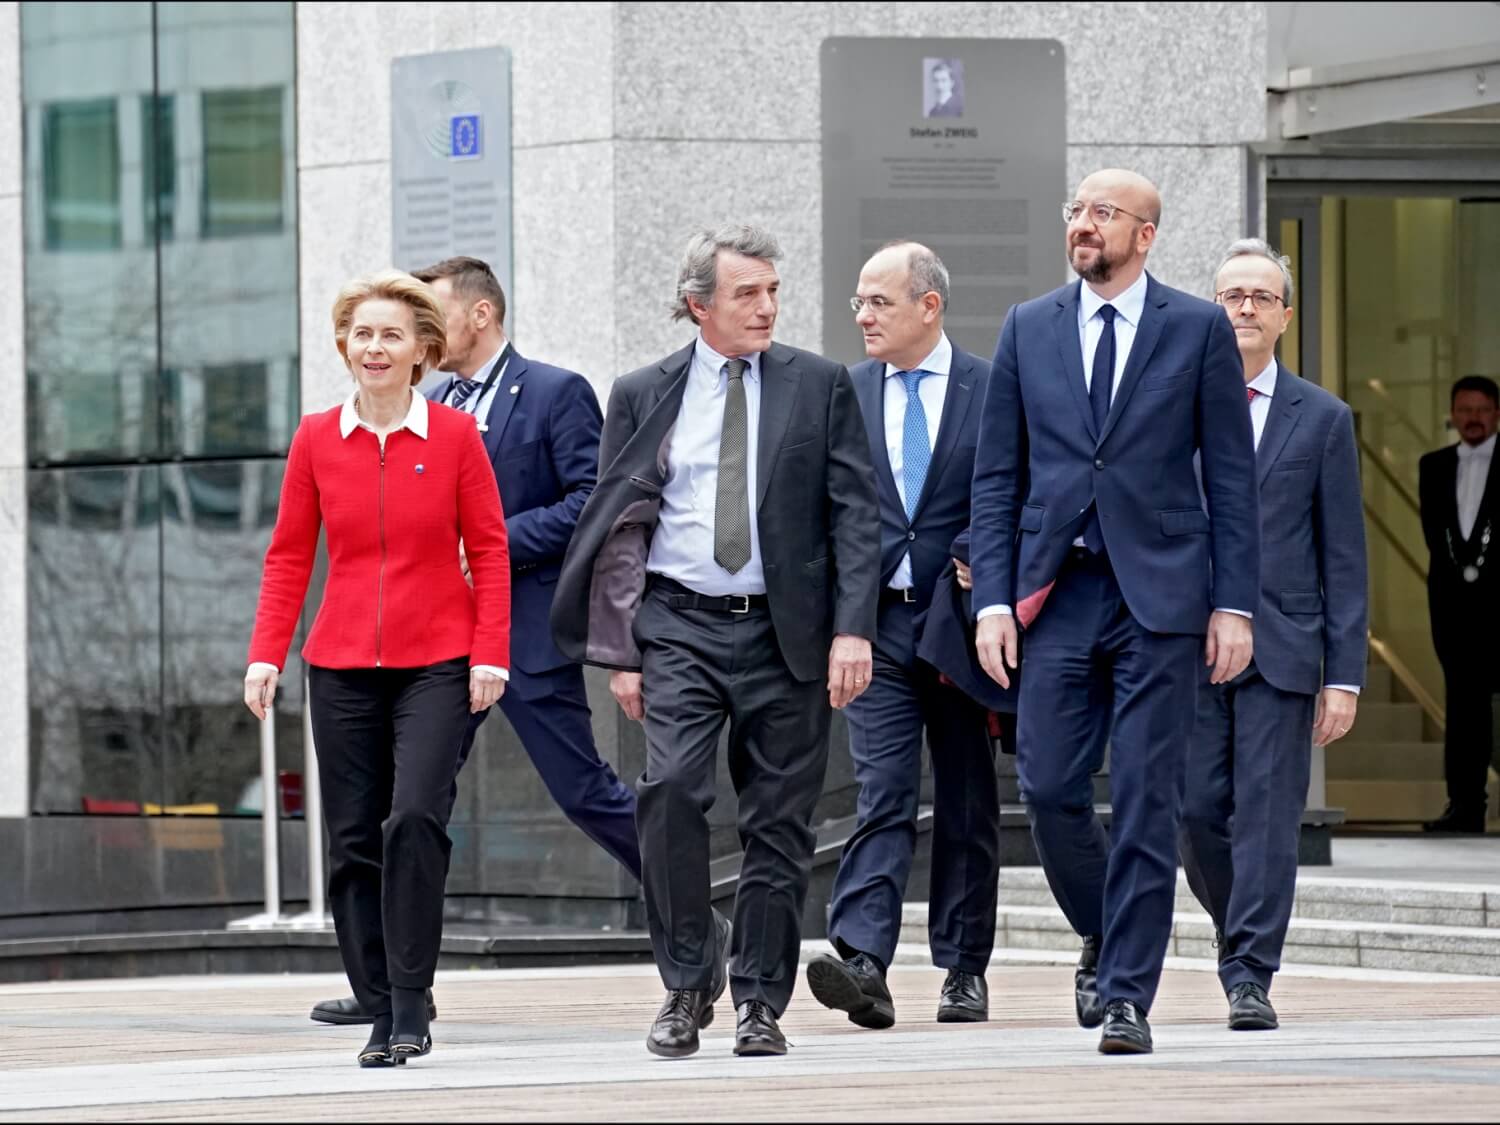 W pierwszym rzędzie idą od lewej przewodnicząca Komisji Europejskiej Ursula von der Leyen, przewodniczący Parlamentu Europejskiego David Sassoli i przewodniczący Rady Europejskiej Charles Michel